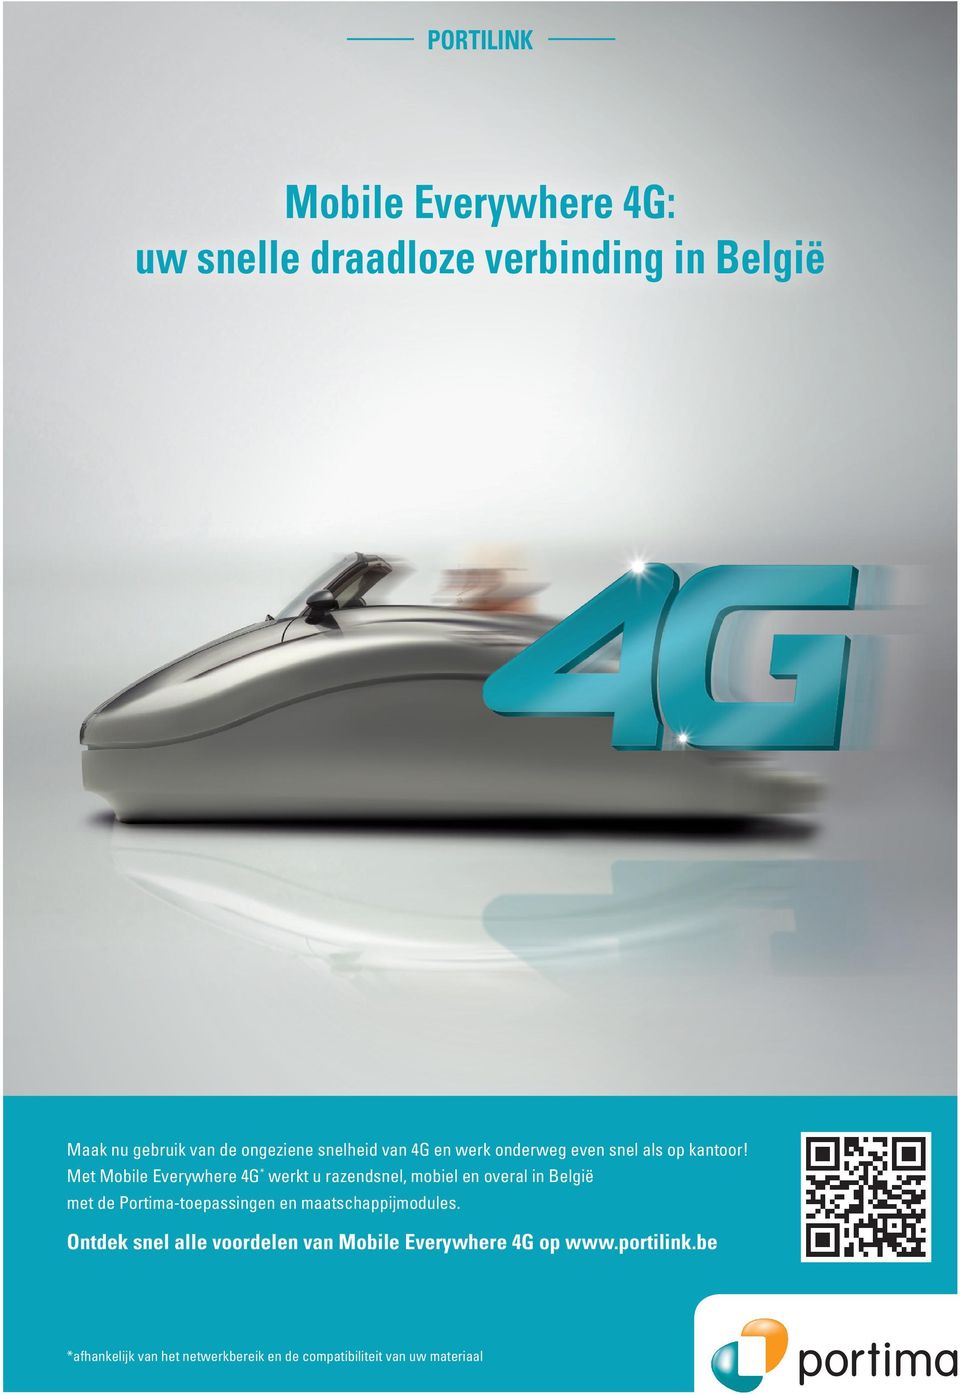 Met Mobile Everywhere 4G * werkt u razendsnel, mobiel en overal in België met de Portima-toepassingen en